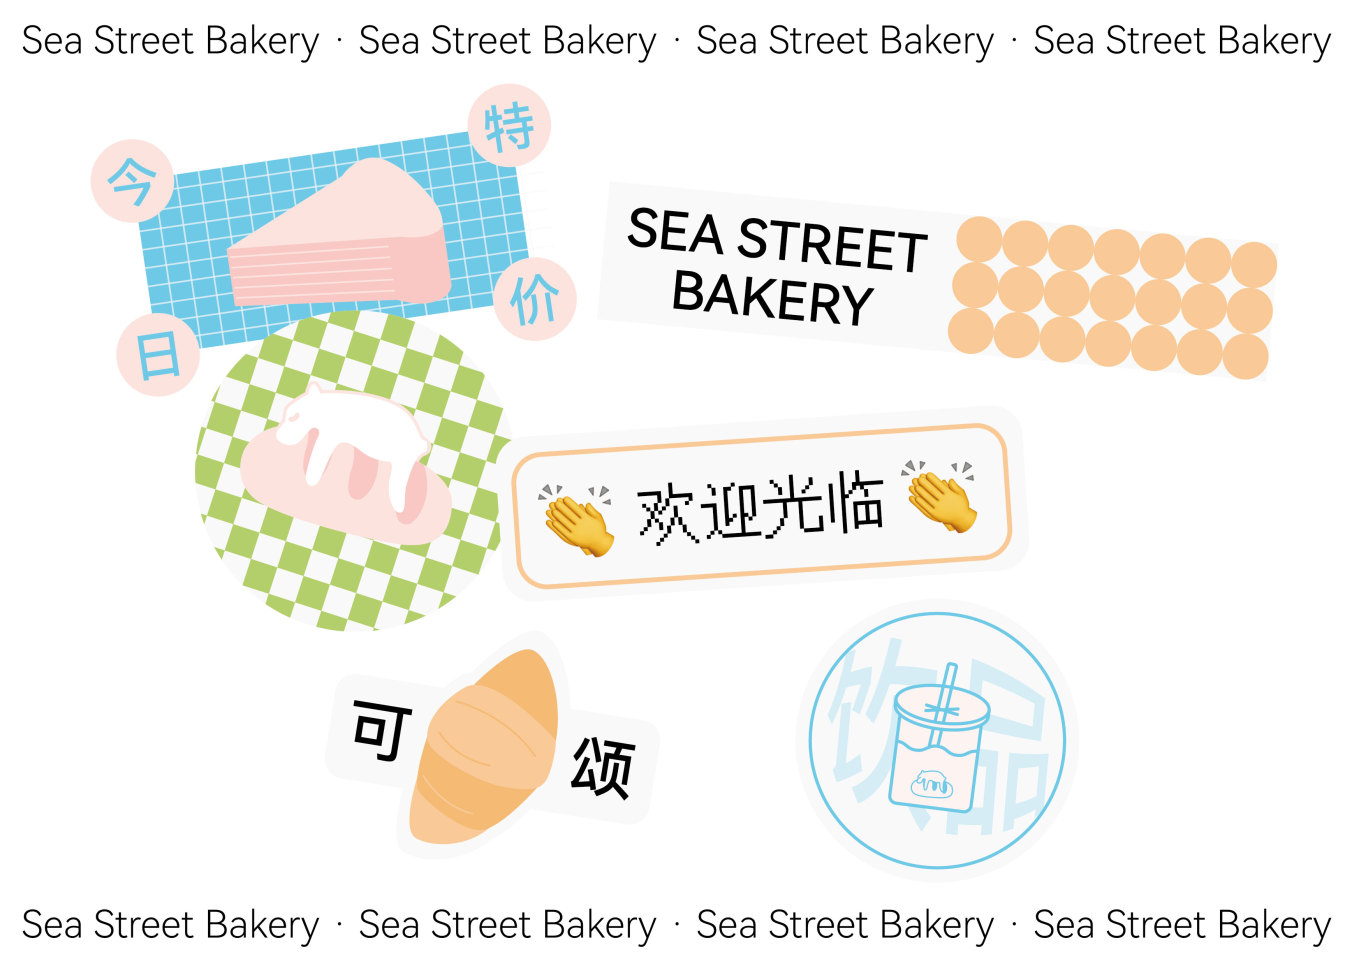 海街面包品牌设计图2